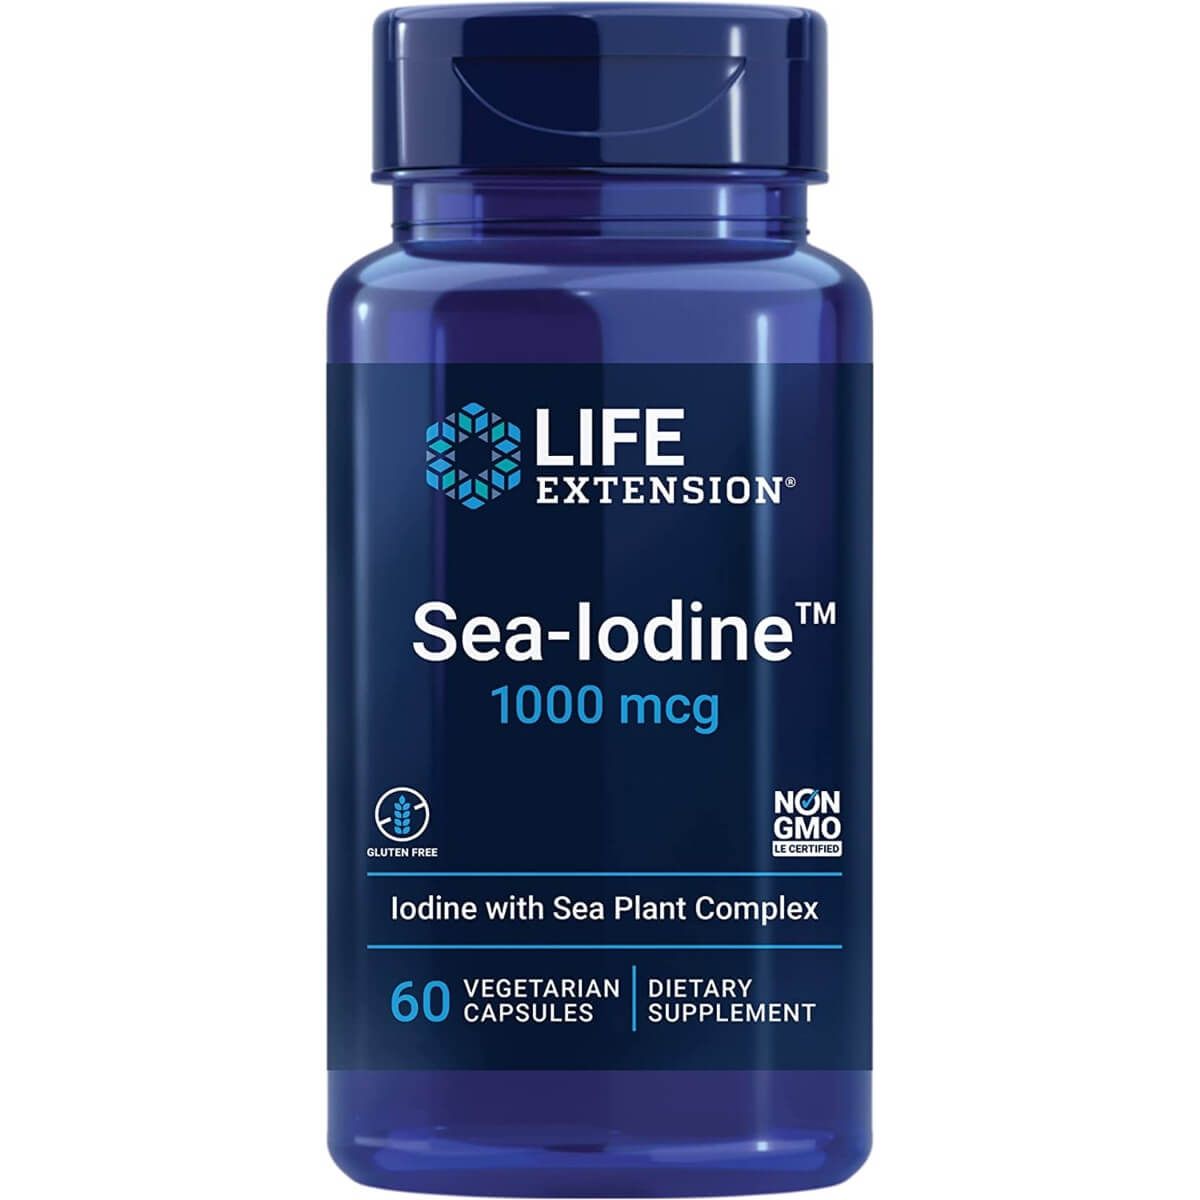 Photos - Vitamins & Minerals Life Extension Sea-Iodine 1000 mcg 60 Vegetarian Capsules PBW-P32913 